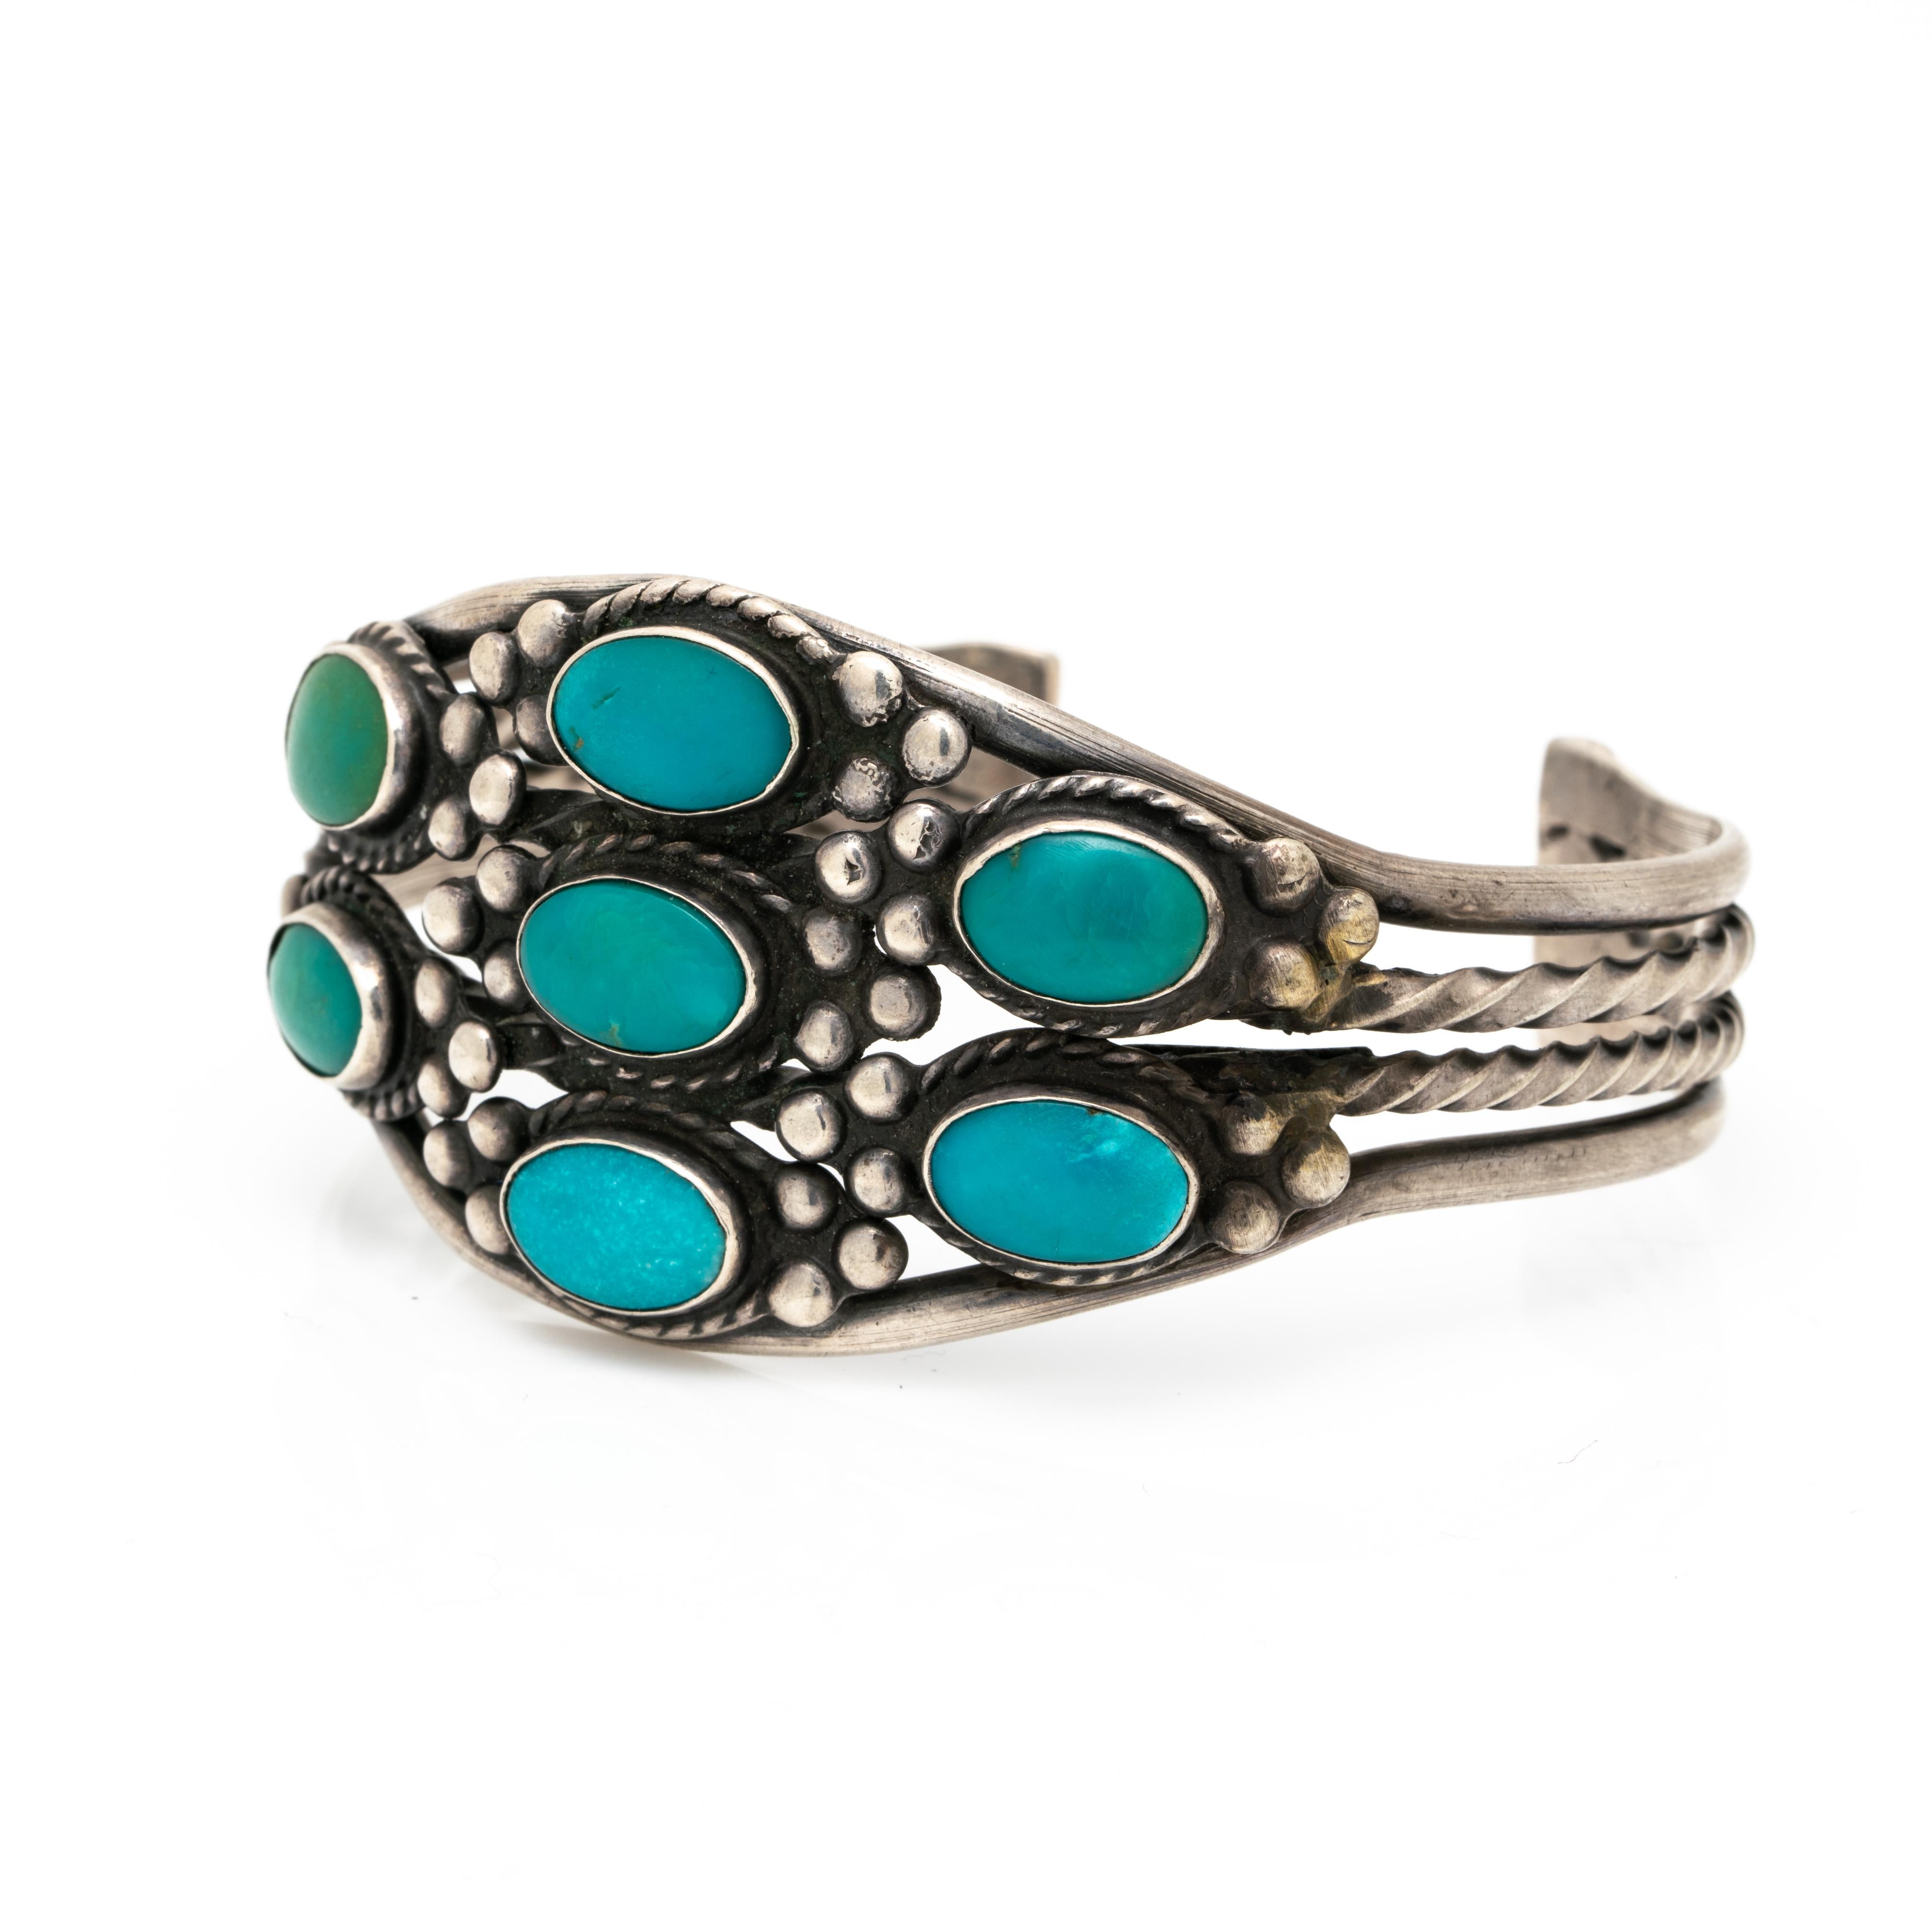 Navajo-Türkis-Armband der amerikanischen Ureinwohner, ca. 1950er Jahre
Handgraviert und handgeschmiedet. Eine wunderschöne Navajo-Manschette!

Die Patina des Silbers ist oxidiert, wir reinigen keine alten und antiken Silberstücke, da einige Kunden